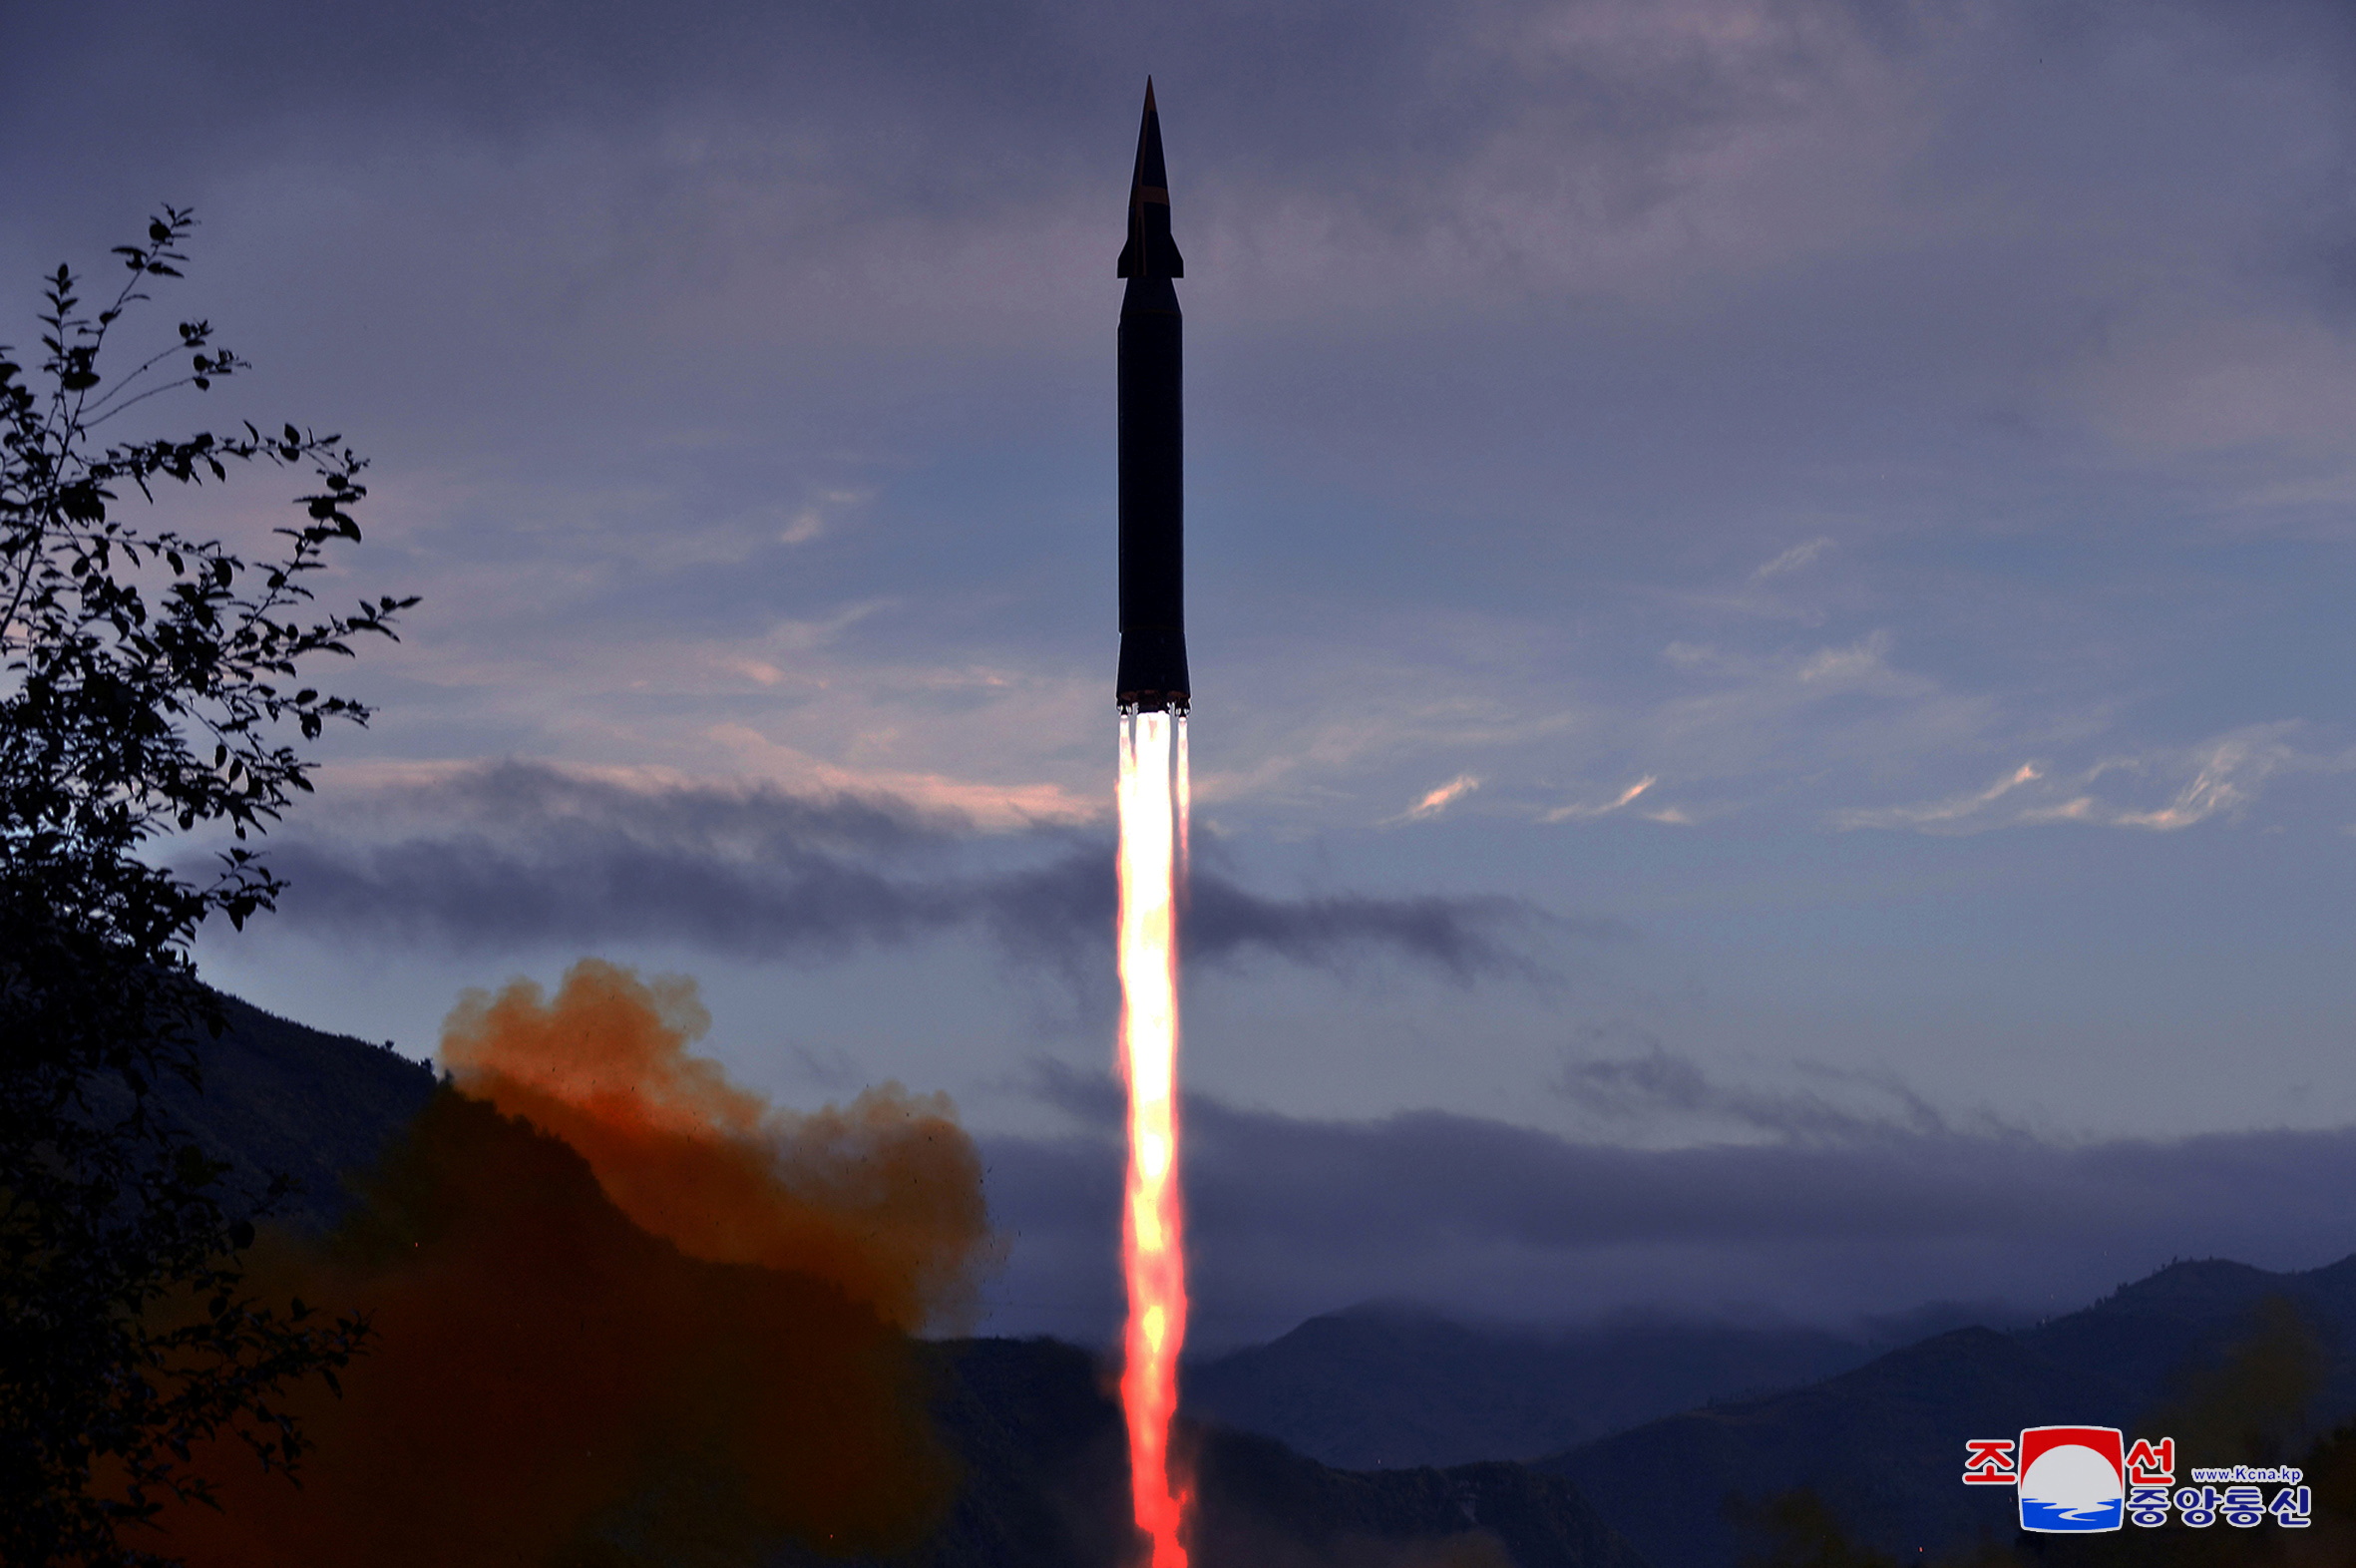 उत्तर कोरिया ने हाइपरसोनिक मिसाइल के सफल परीक्षण का दावा किया